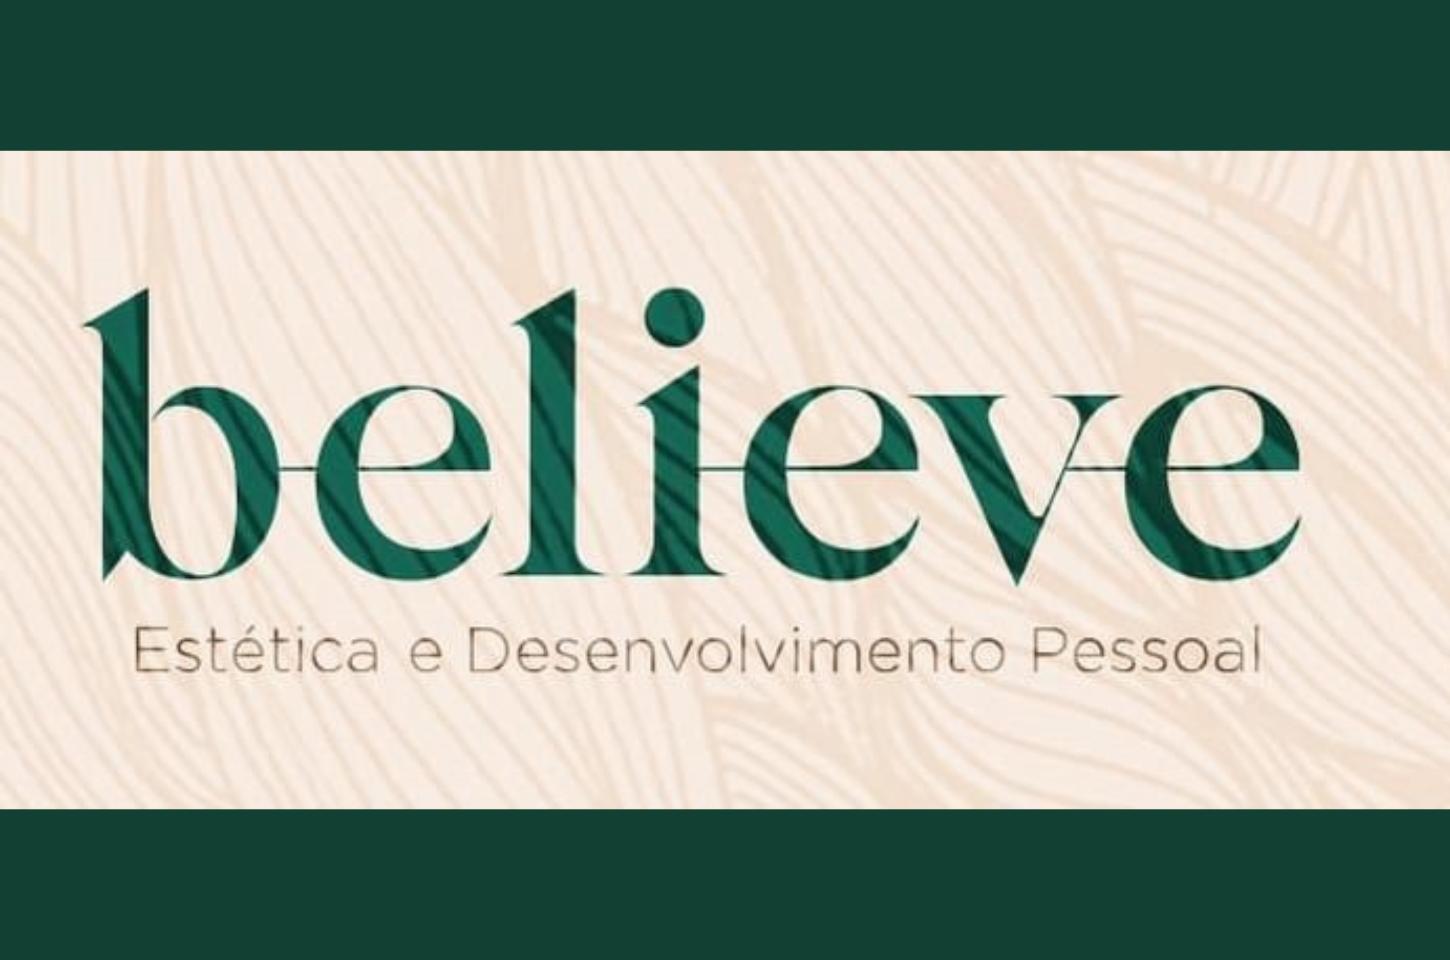 Believe - Estética e Desenvolvimento Pessoal